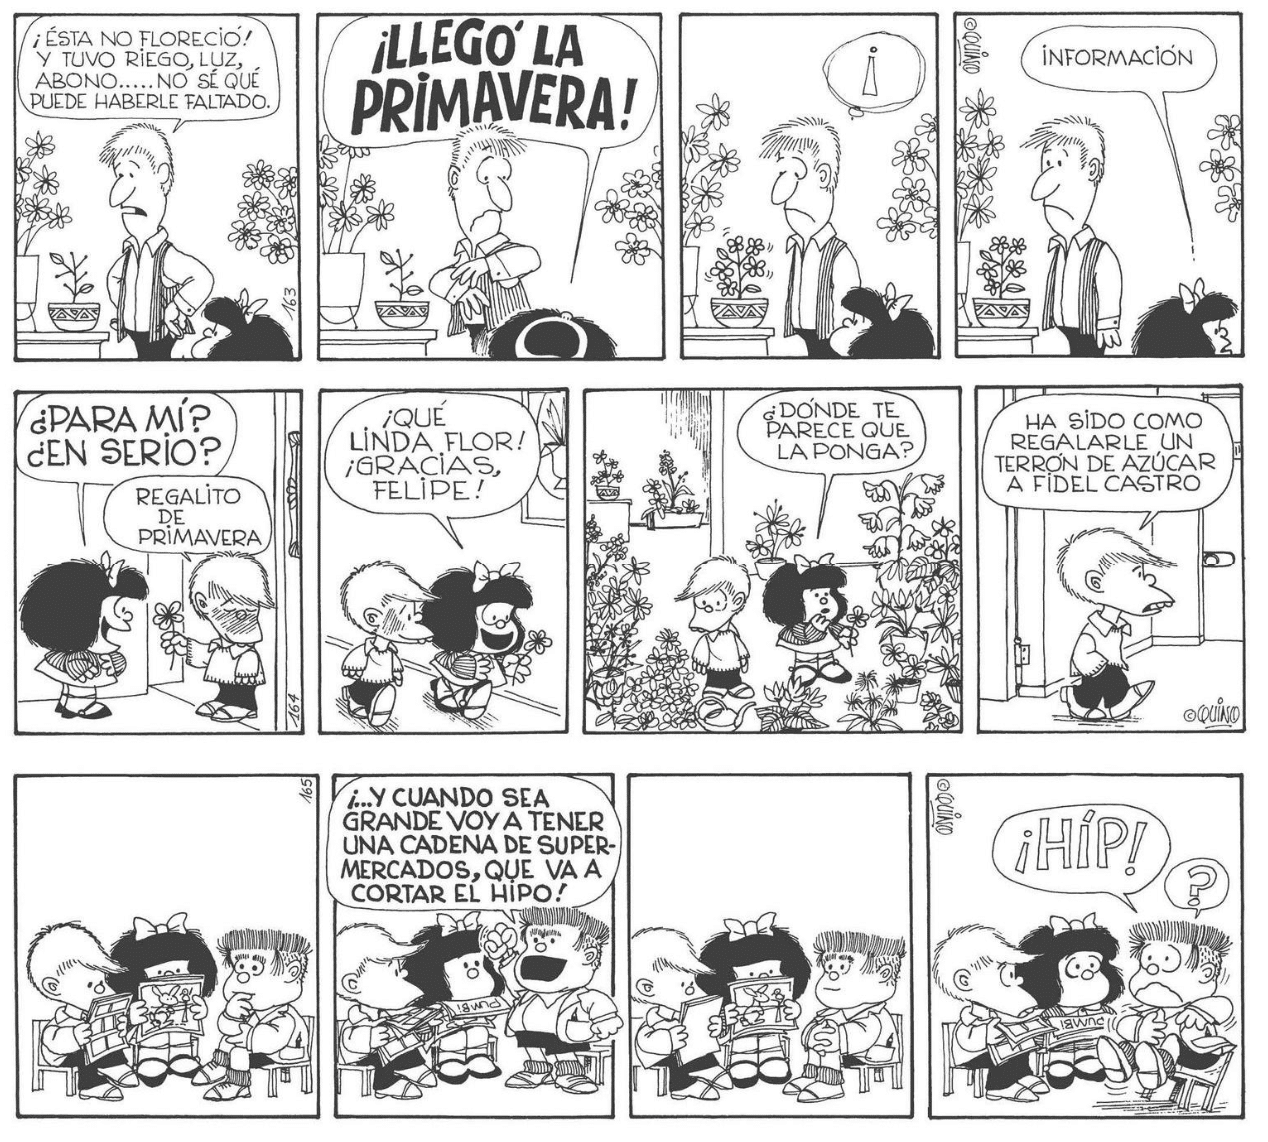 Los invidentes también podrán disfrutar de los cómic de Mafalda, ¡por fin en braille! 55